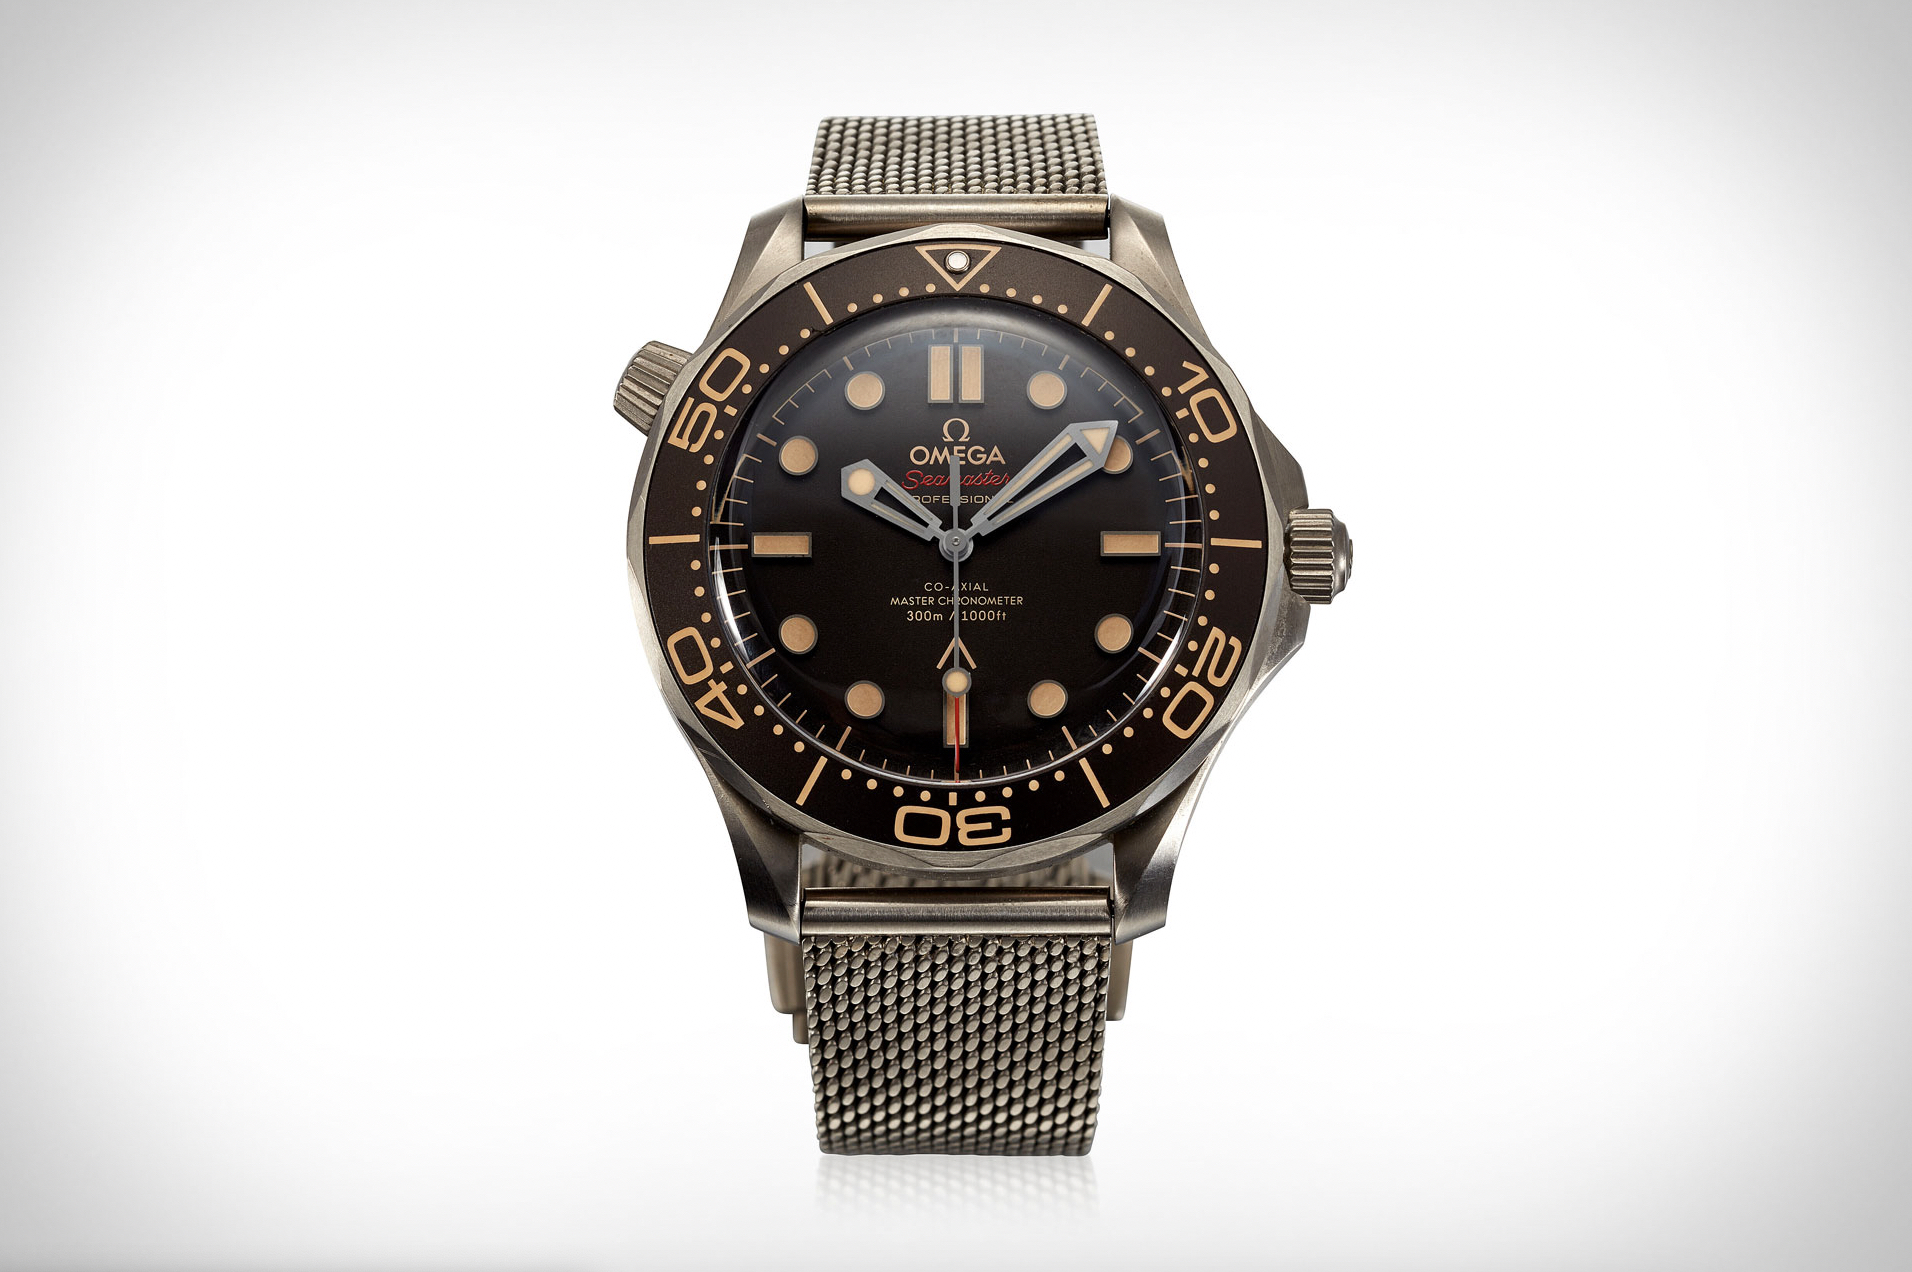 Daniel Craig worn Seamaster Diver 300M Titanium No Time To Die 007 Edition